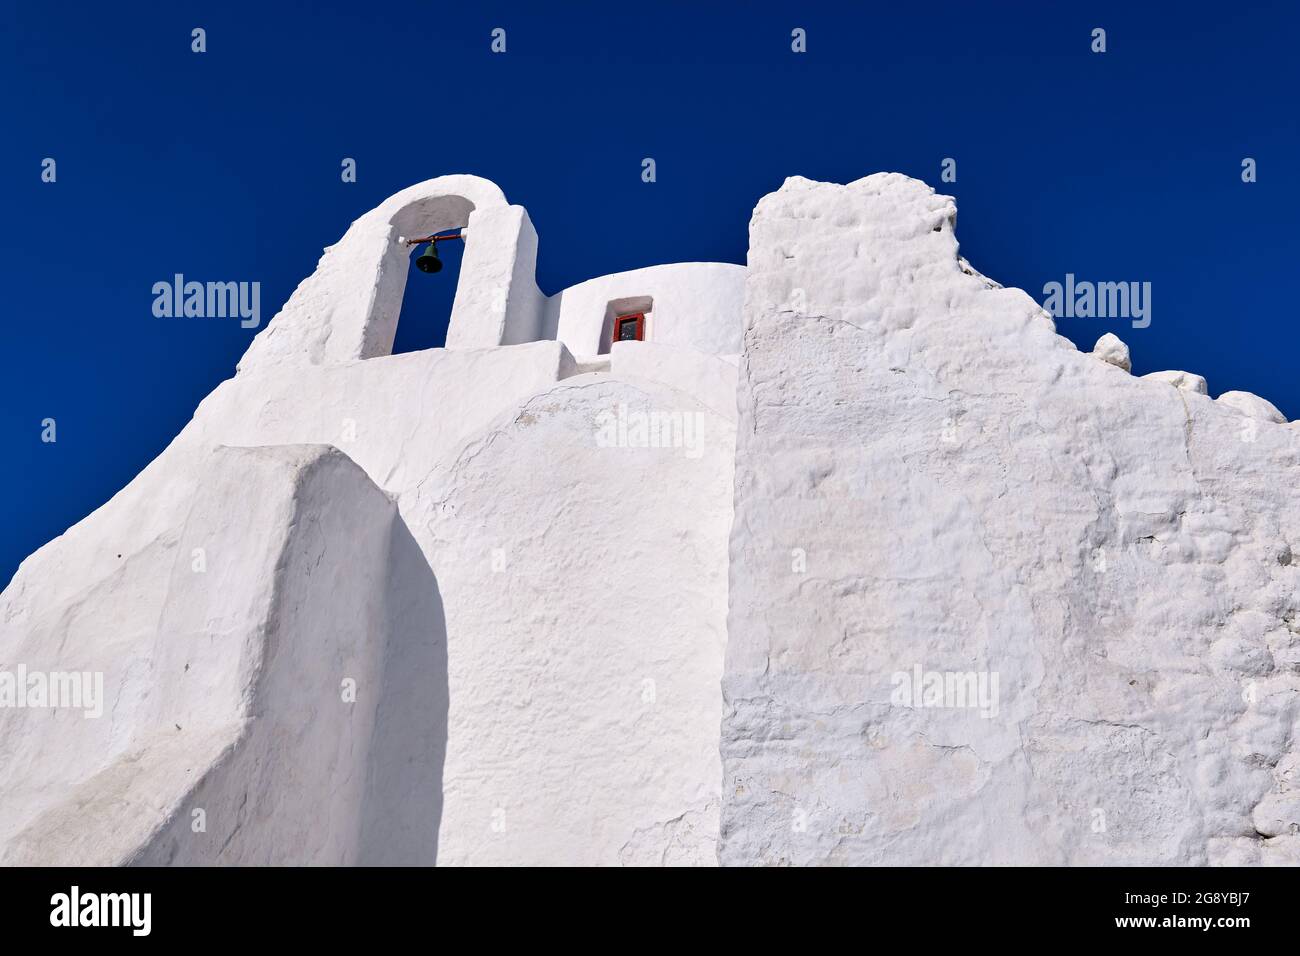 Berühmtes Touristenziel, Mykonos, Griechenland. Weiße griechisch-orthodoxe Kirche von Panagia Paraportiani, Stadt Chora auf der Insel bei Sonnenaufgang. Legendäres Reiseziel Stockfoto